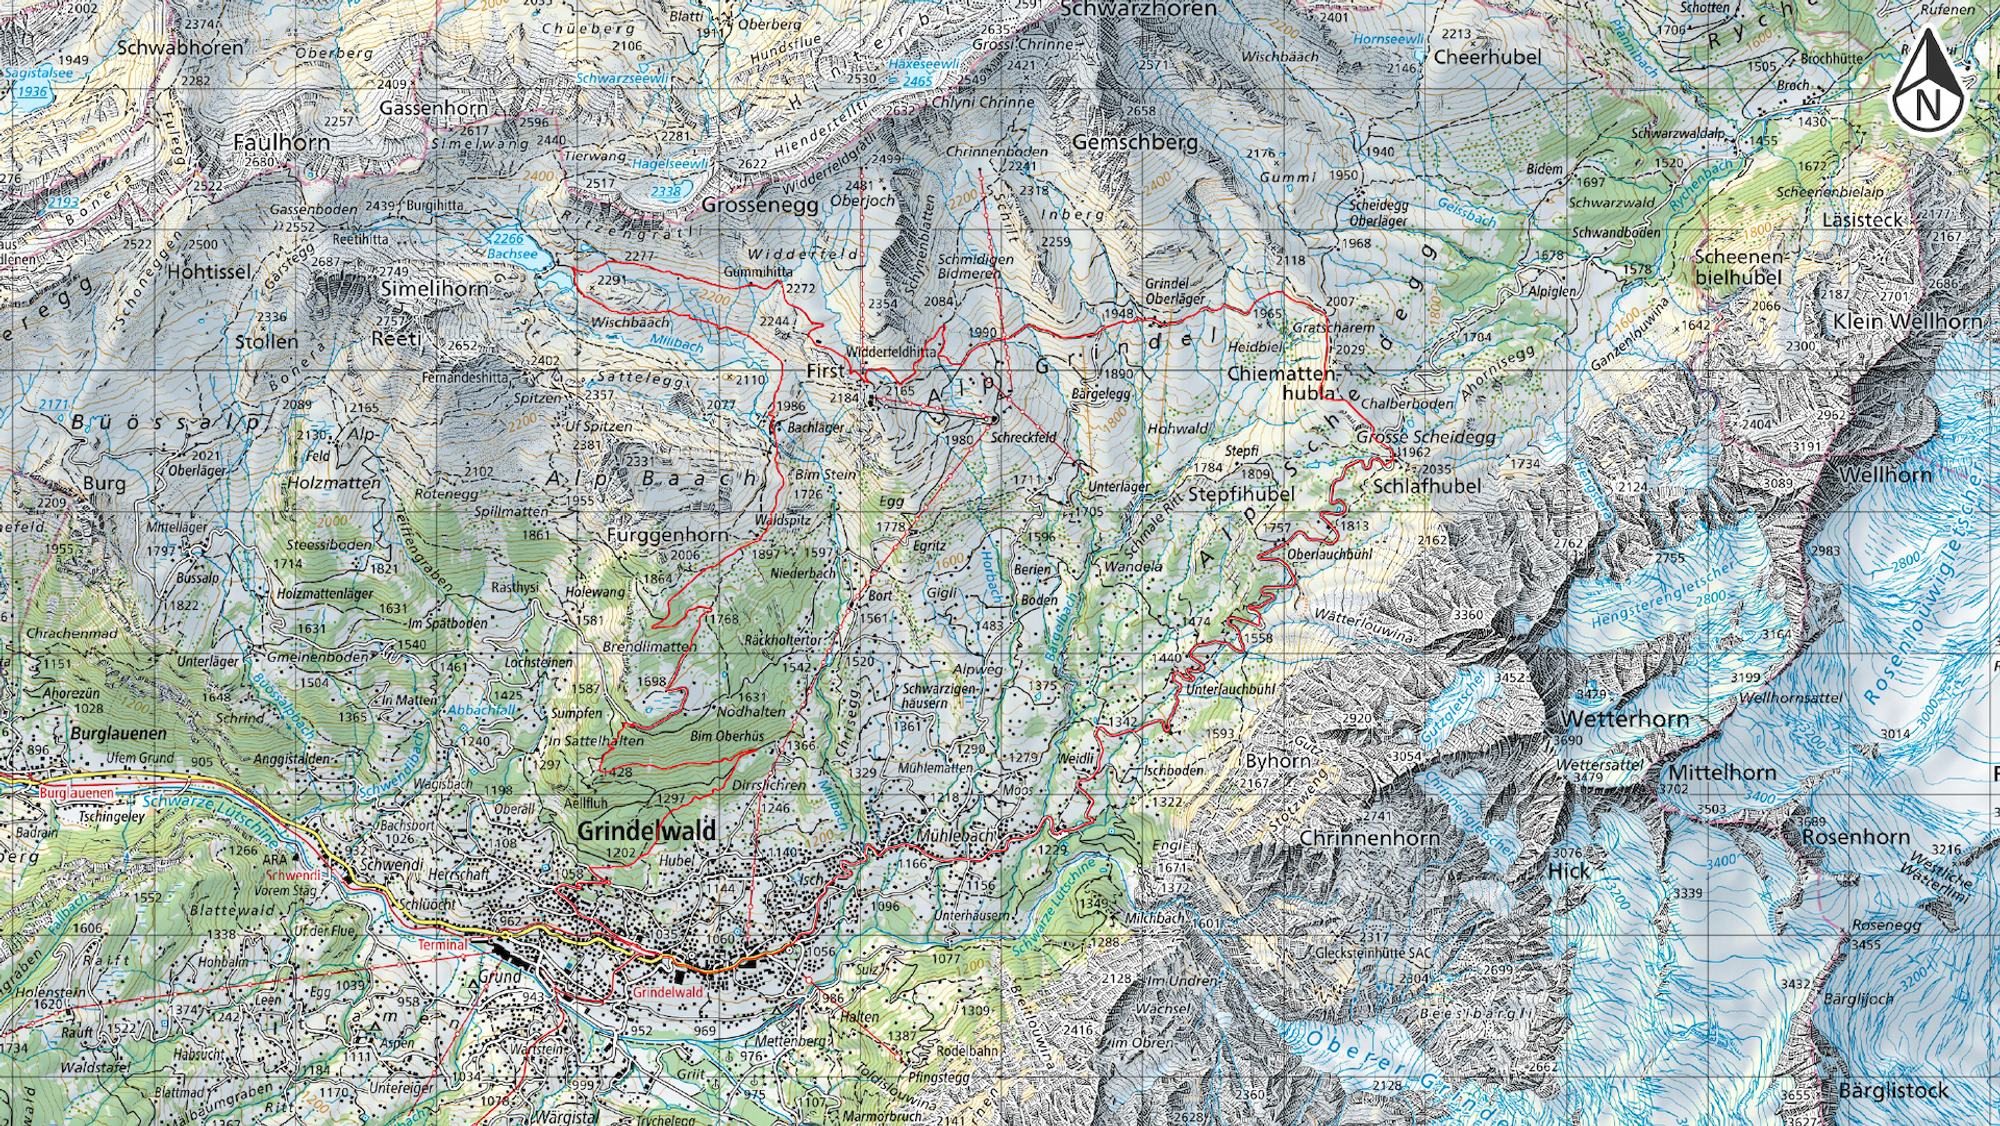 Grindelwald - Goldene Stunden am Bachalpsee